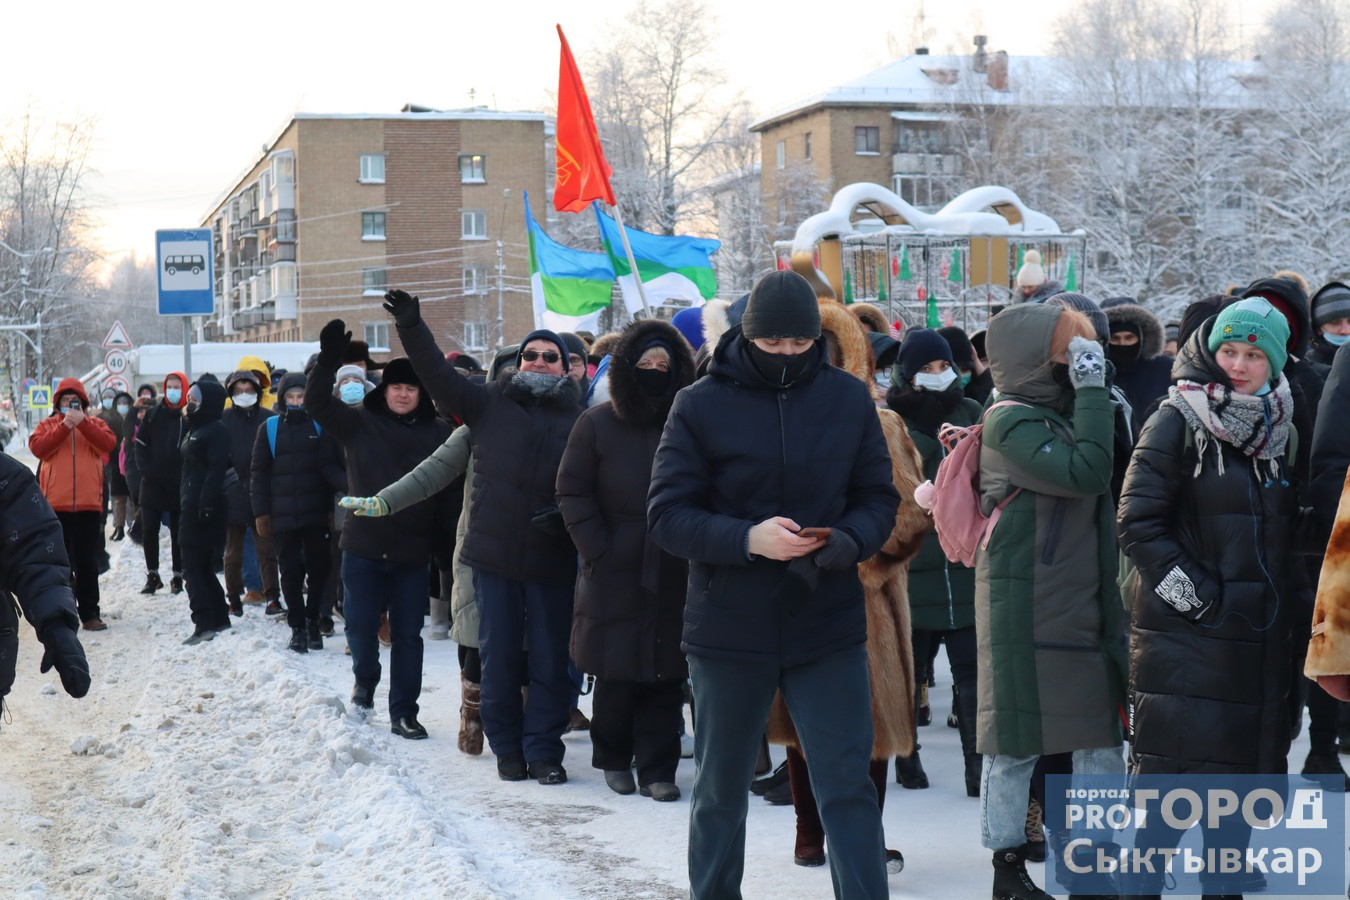 Фоторепортаж: как в Сыктывкаре прошел несанкционированный митинг в поддержку Навального